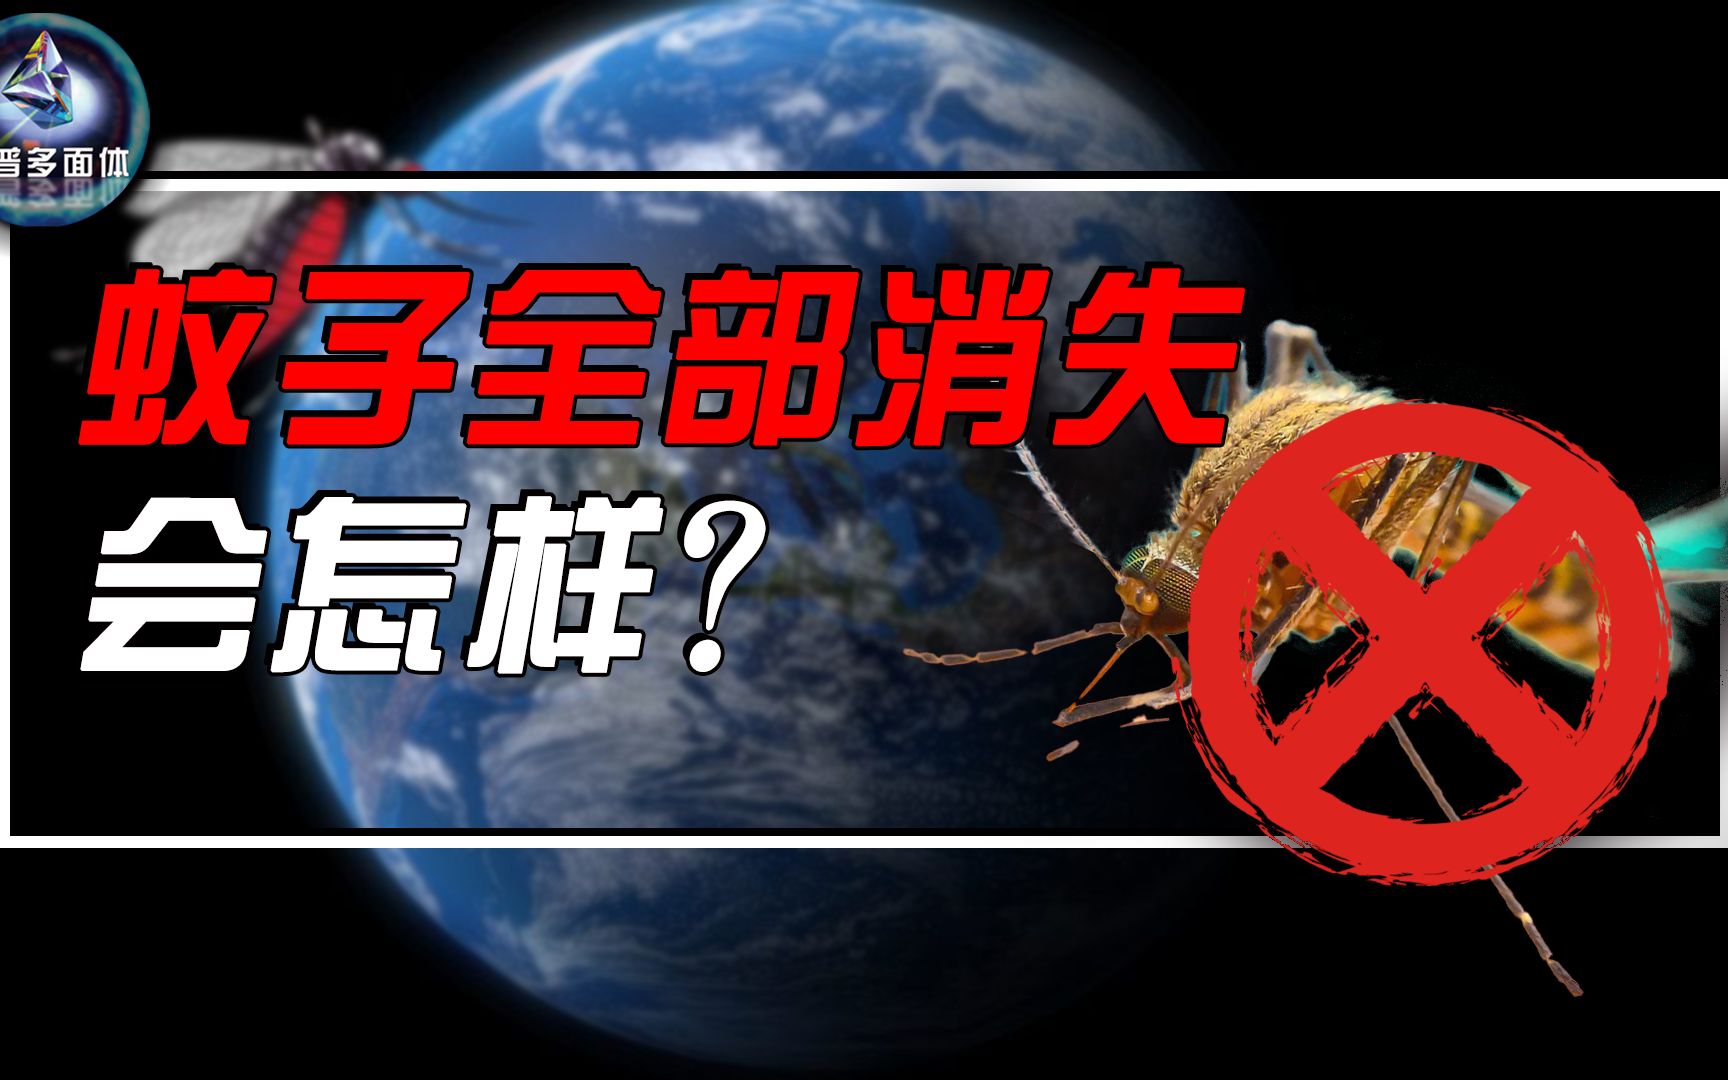 如果把蚊子从地球上抹掉，会发生什么？蚊子真的有必要存在吗？